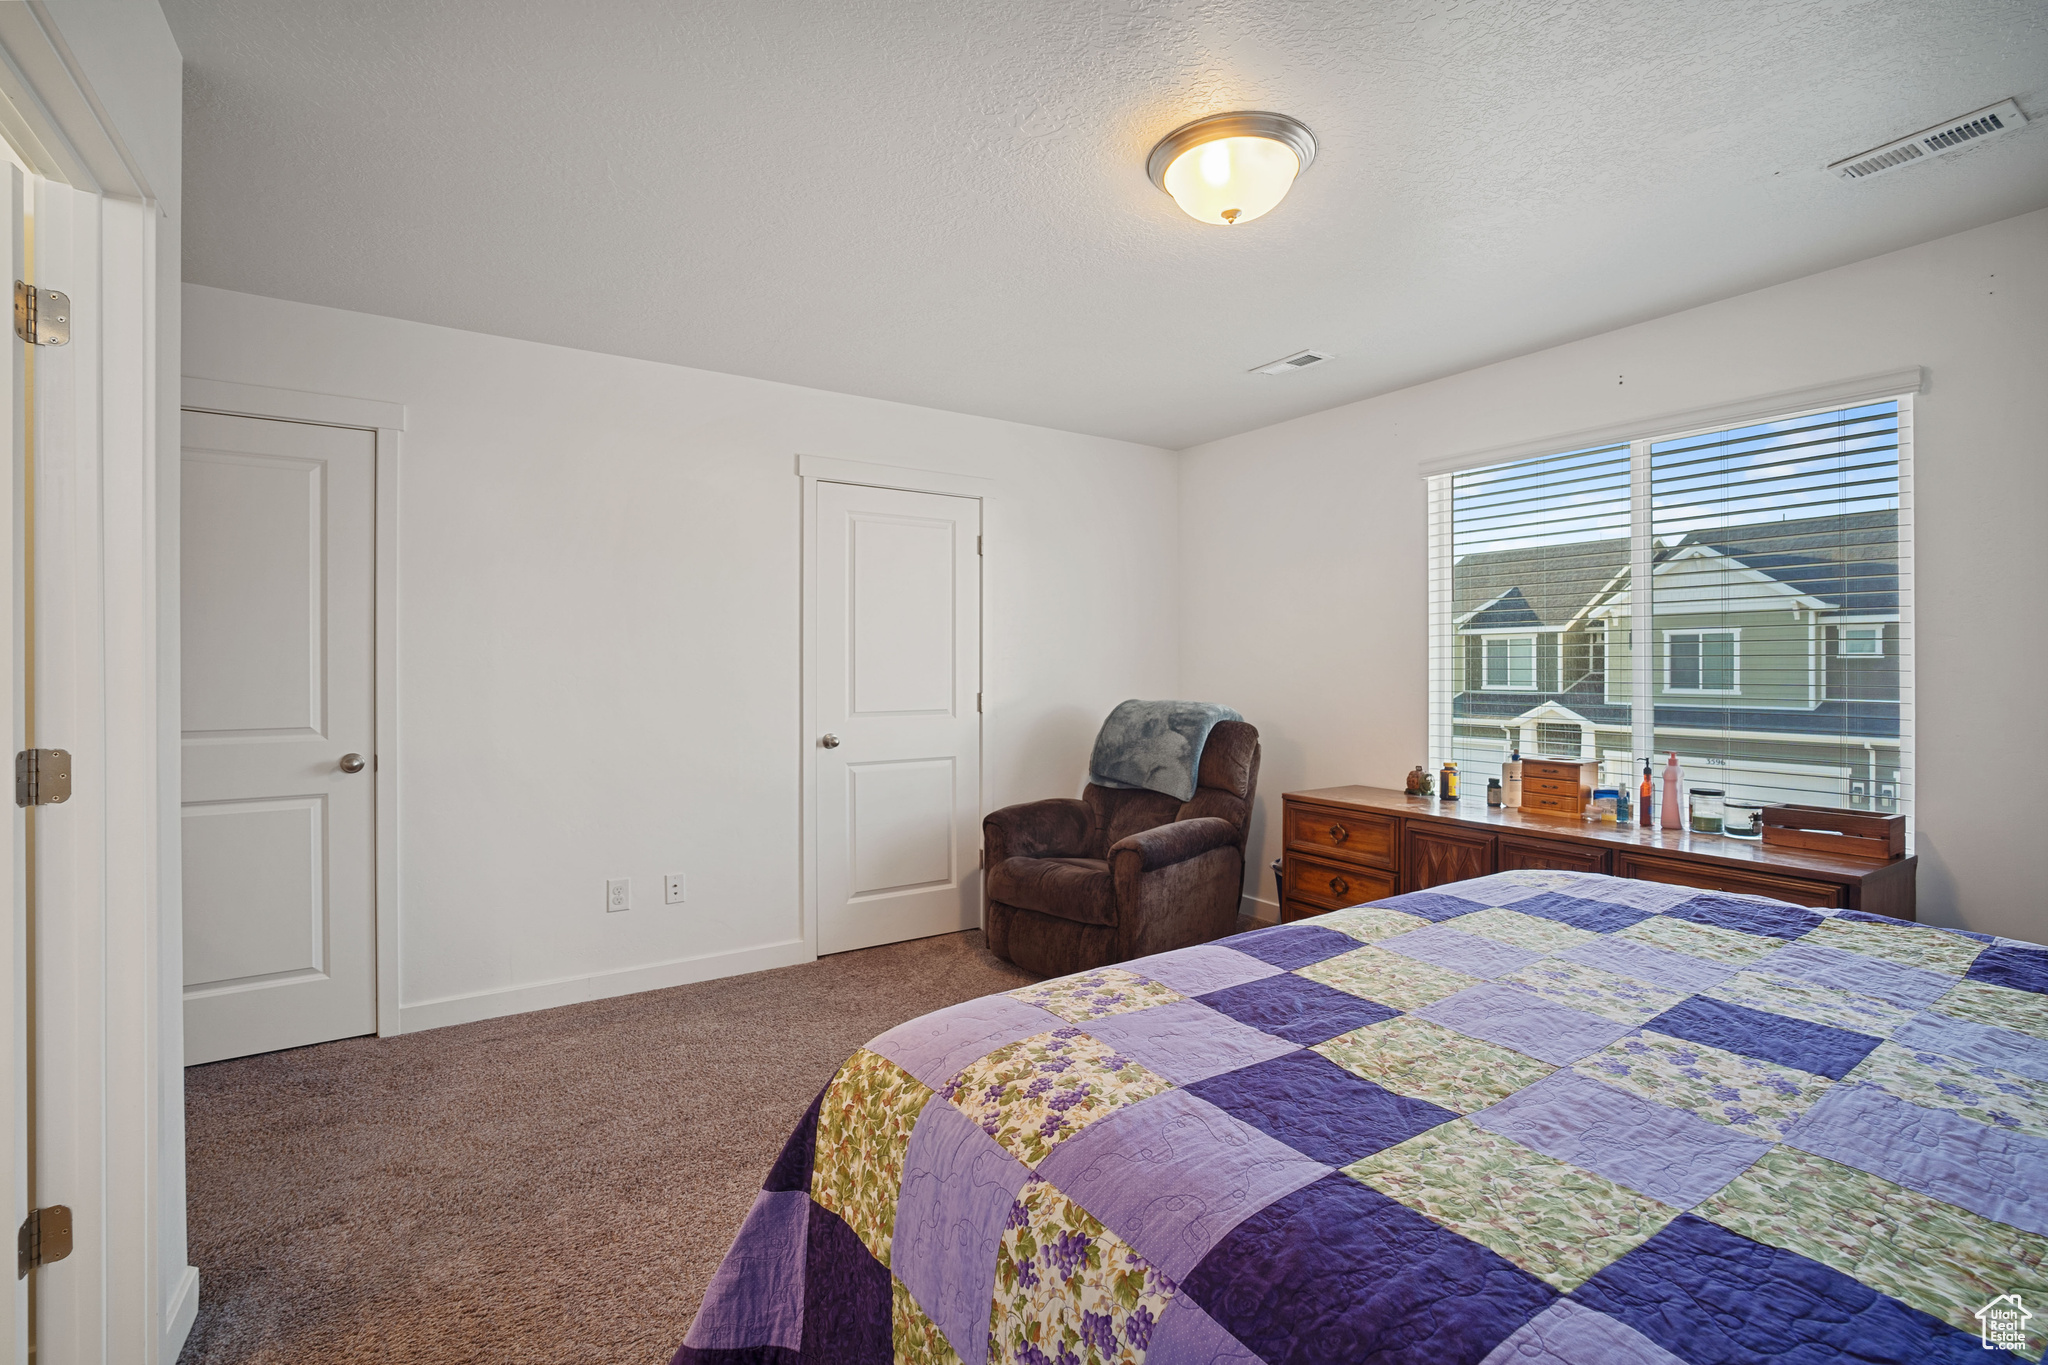 3589 W BARLEY, Lehi, Utah 84043, 3 Bedrooms Bedrooms, 9 Rooms Rooms,2 BathroomsBathrooms,Residential,For sale,BARLEY,1994322